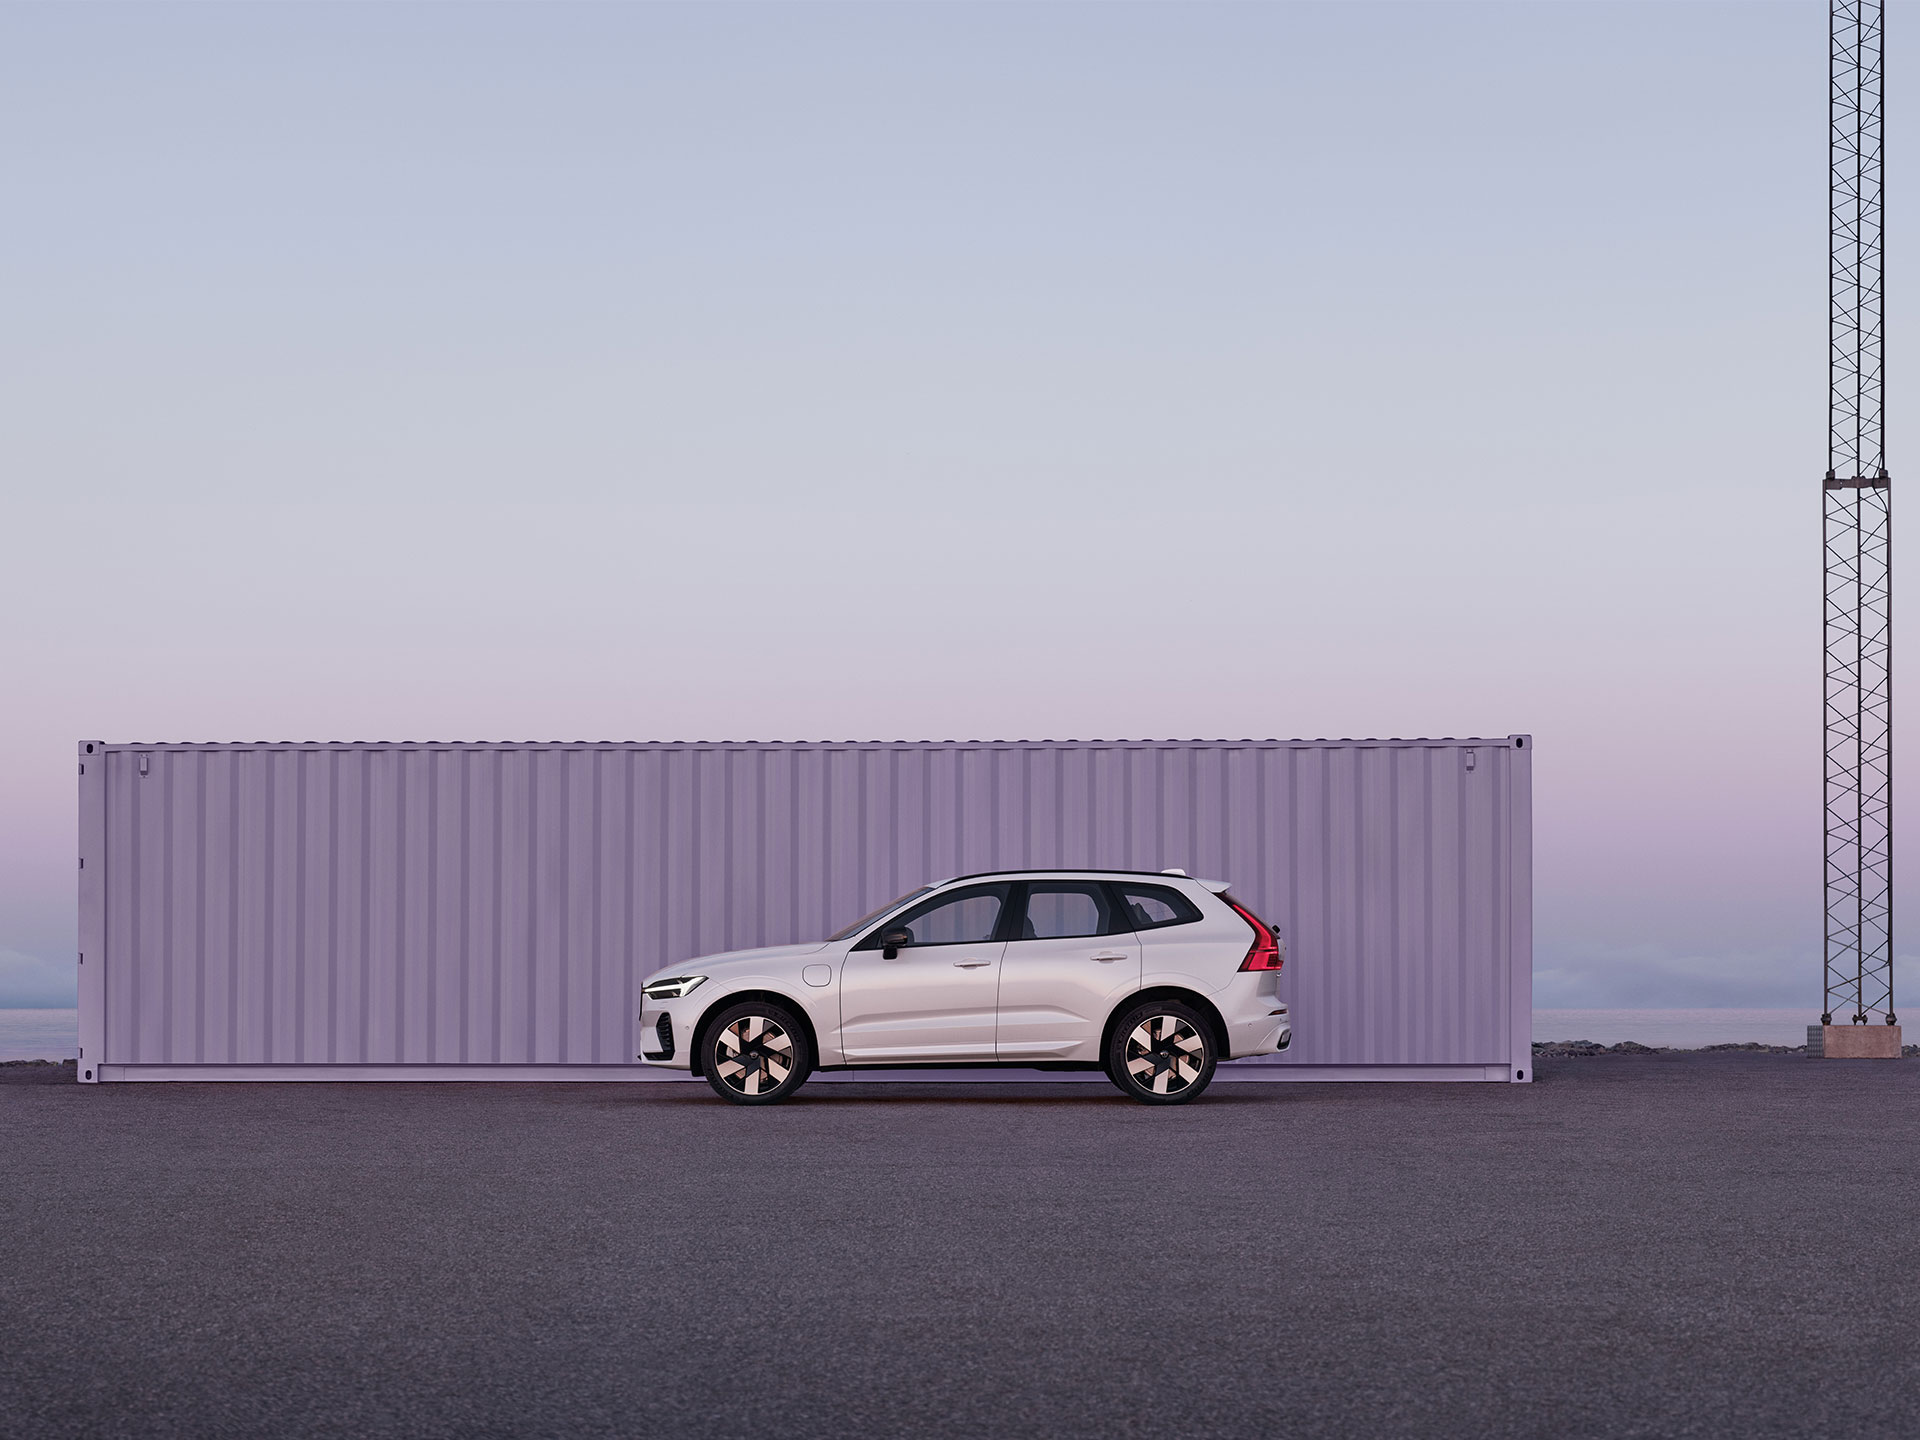 Un Volvo XC60 estacionado en un entorno industrial despejado, iluminado por la luz morada y rosada de un amanecer lleno de colores.